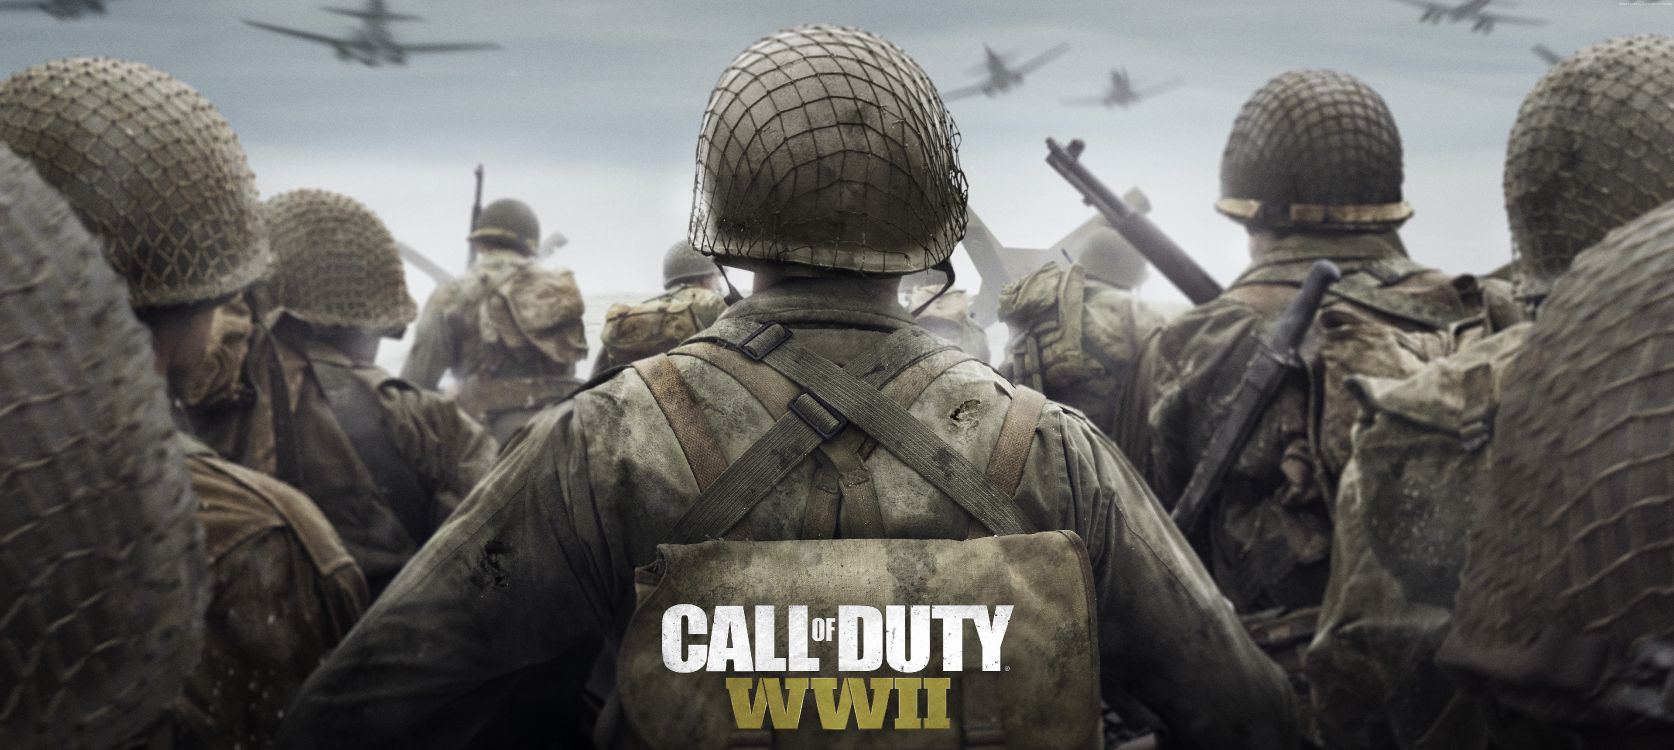 Обои служебный долг 2мв, Call of Duty WWII, activision, sledgehammer игры, солдат в разрешении 7190x3220